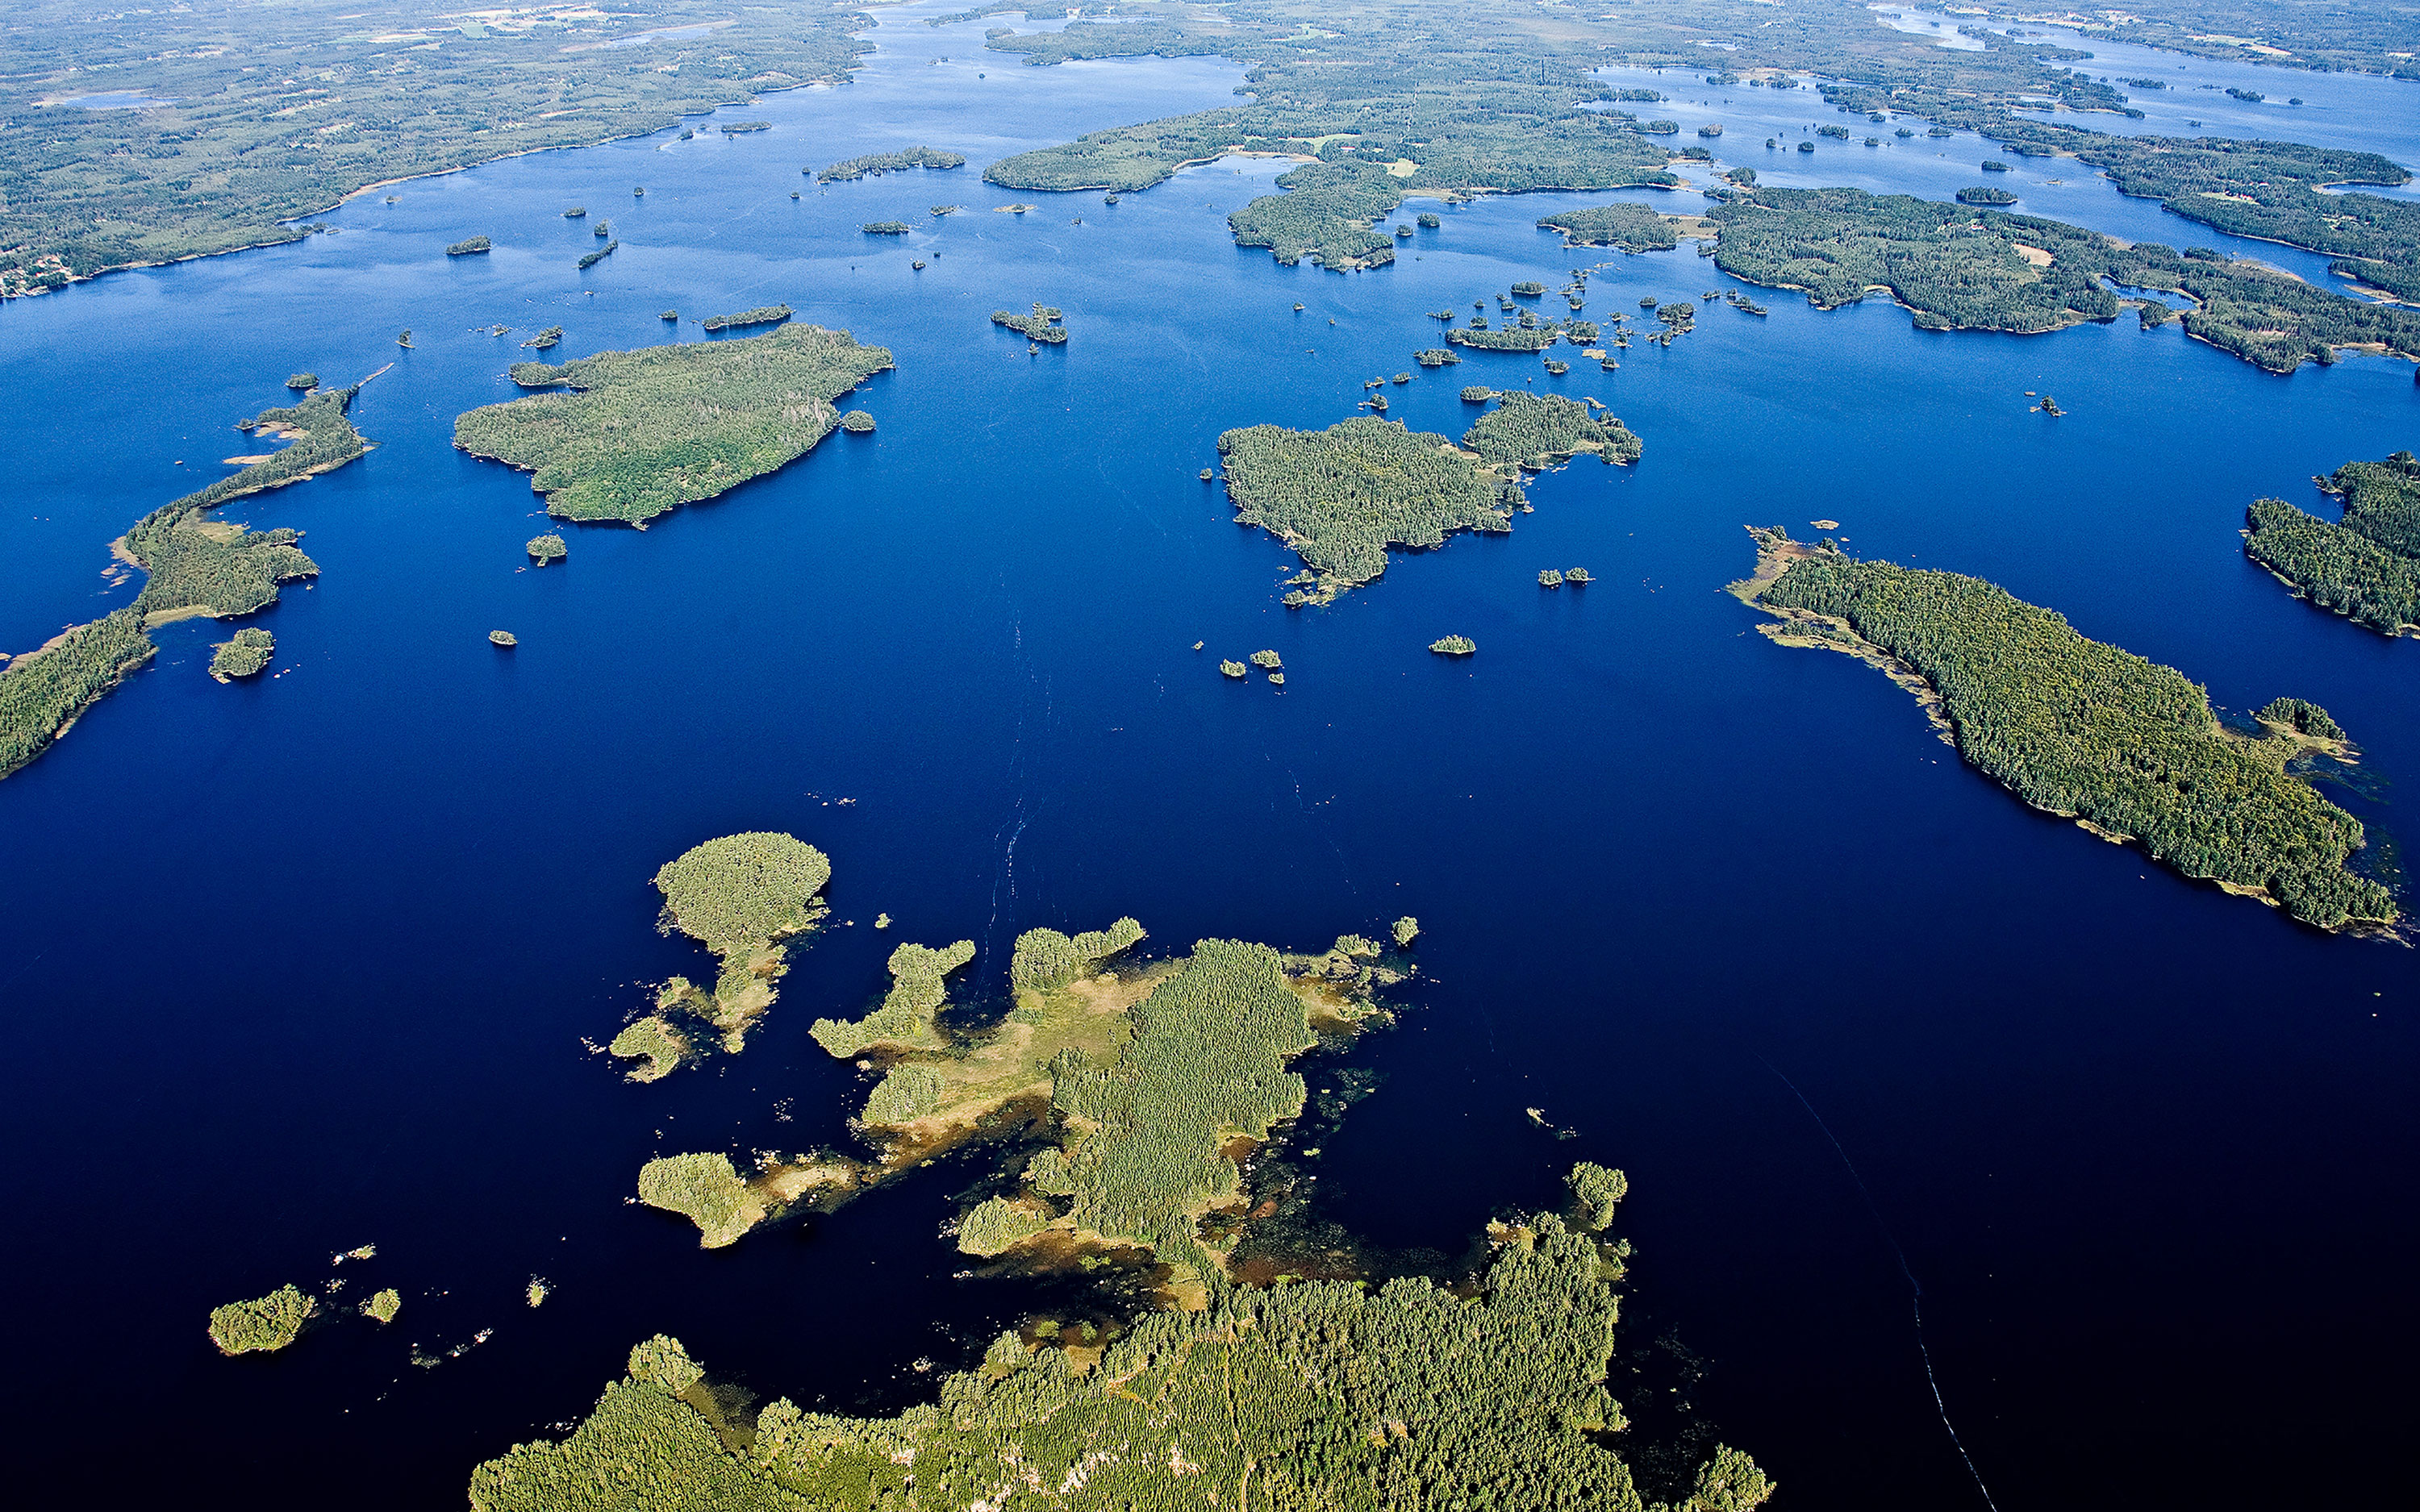 Luftbild des fantastischen Archipels des Åsnen-Nationalparks.